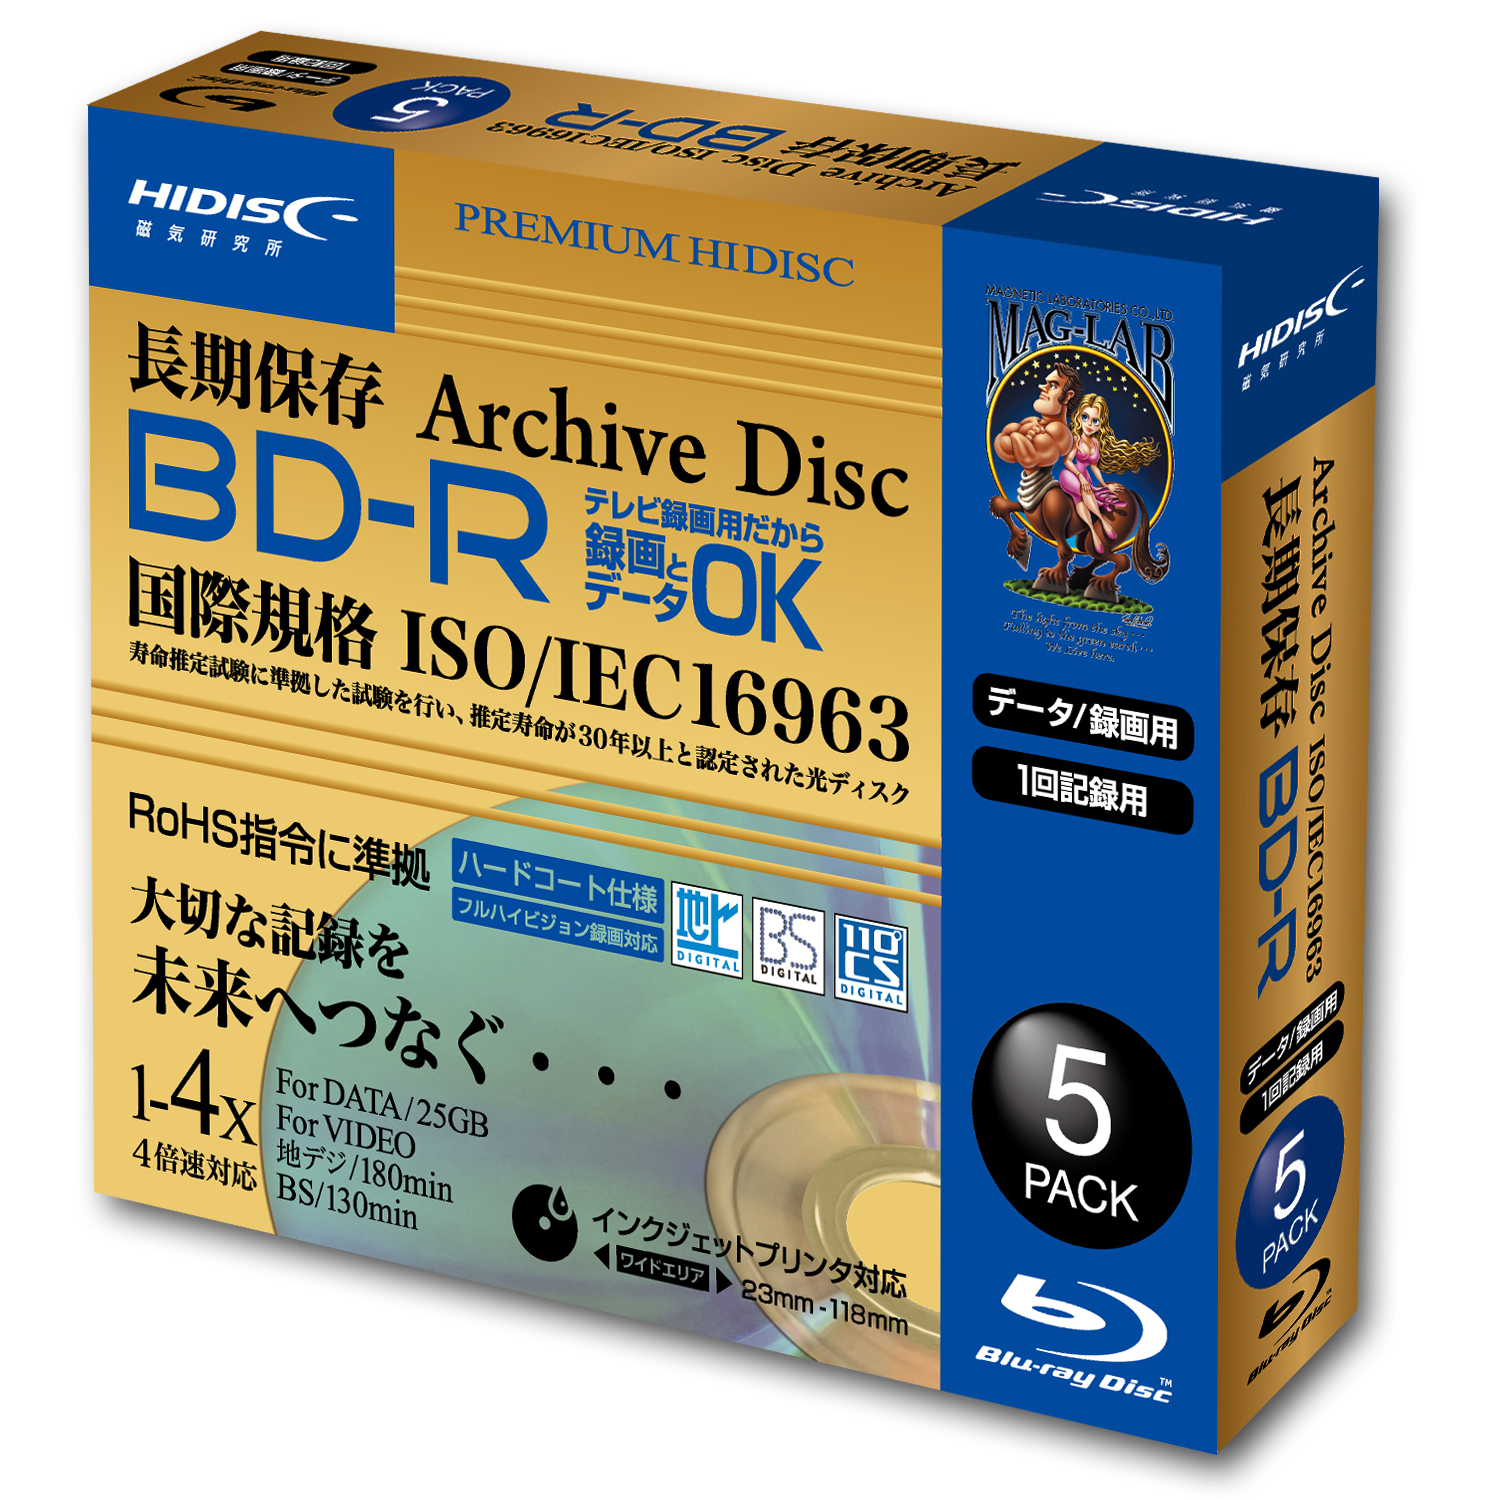 HIDISC 長期保存(推定30年) BD-R 録画用 130分 4倍速対応 5枚 5mmSlimケース入り ホワイト ワイドプリンタブル HDBR130YP5SCAR